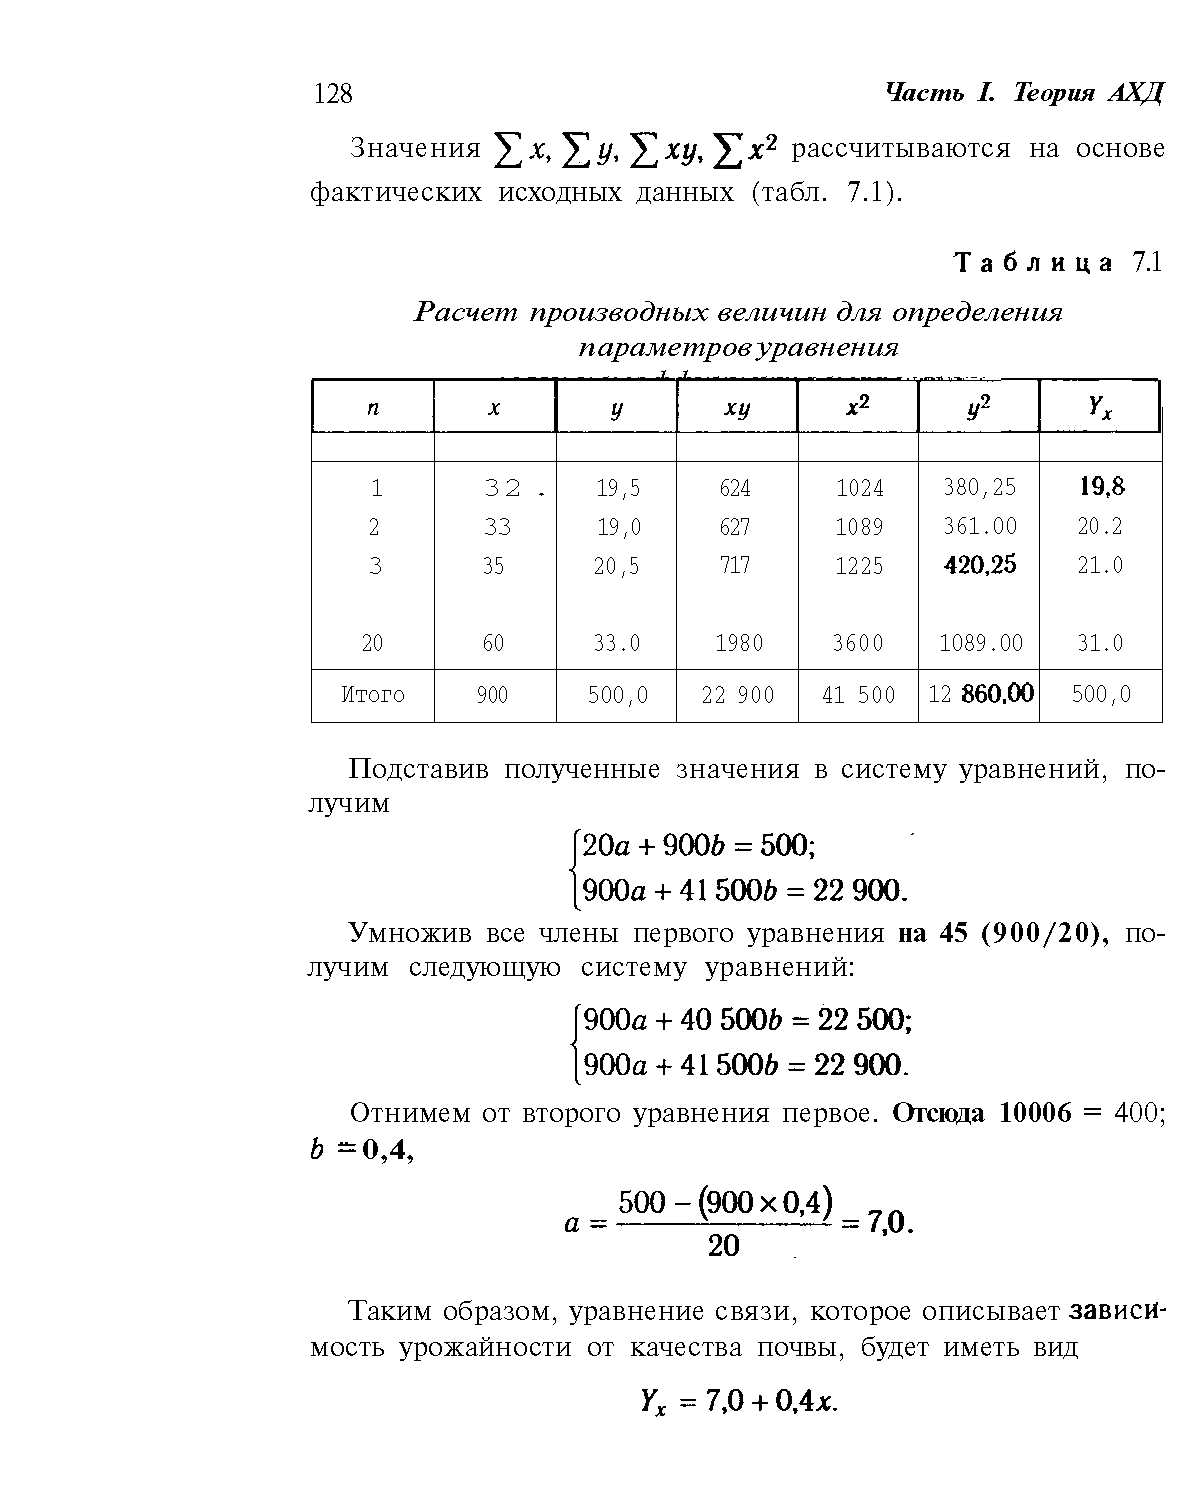 Таблица 7.1 Расчет производных величин для определения
